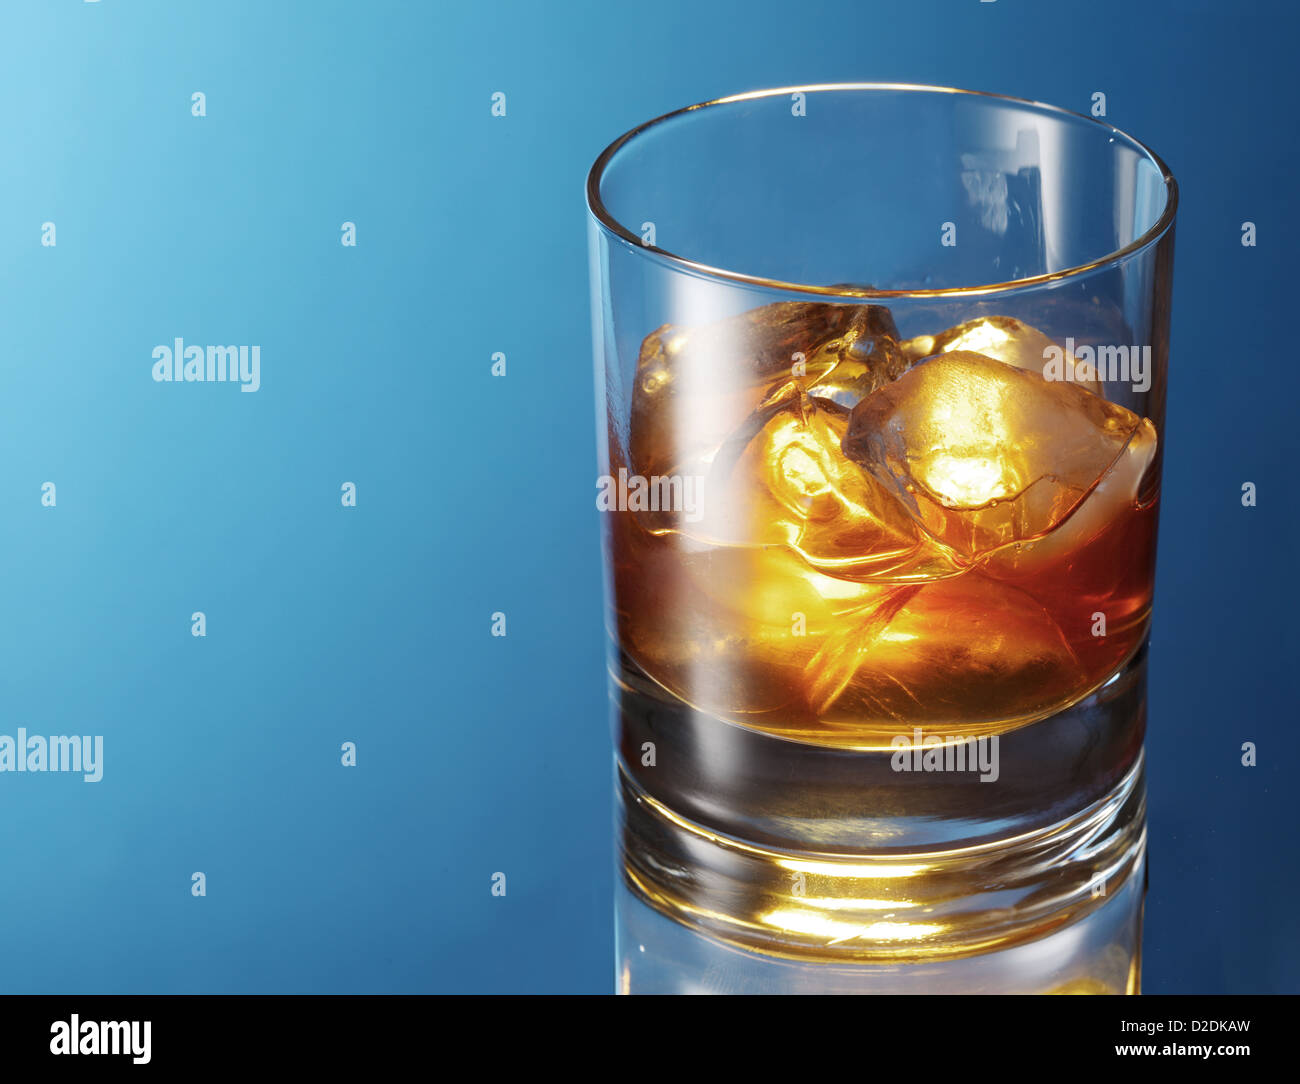 Vaso de whisky sobre un fondo azul. Foto de stock